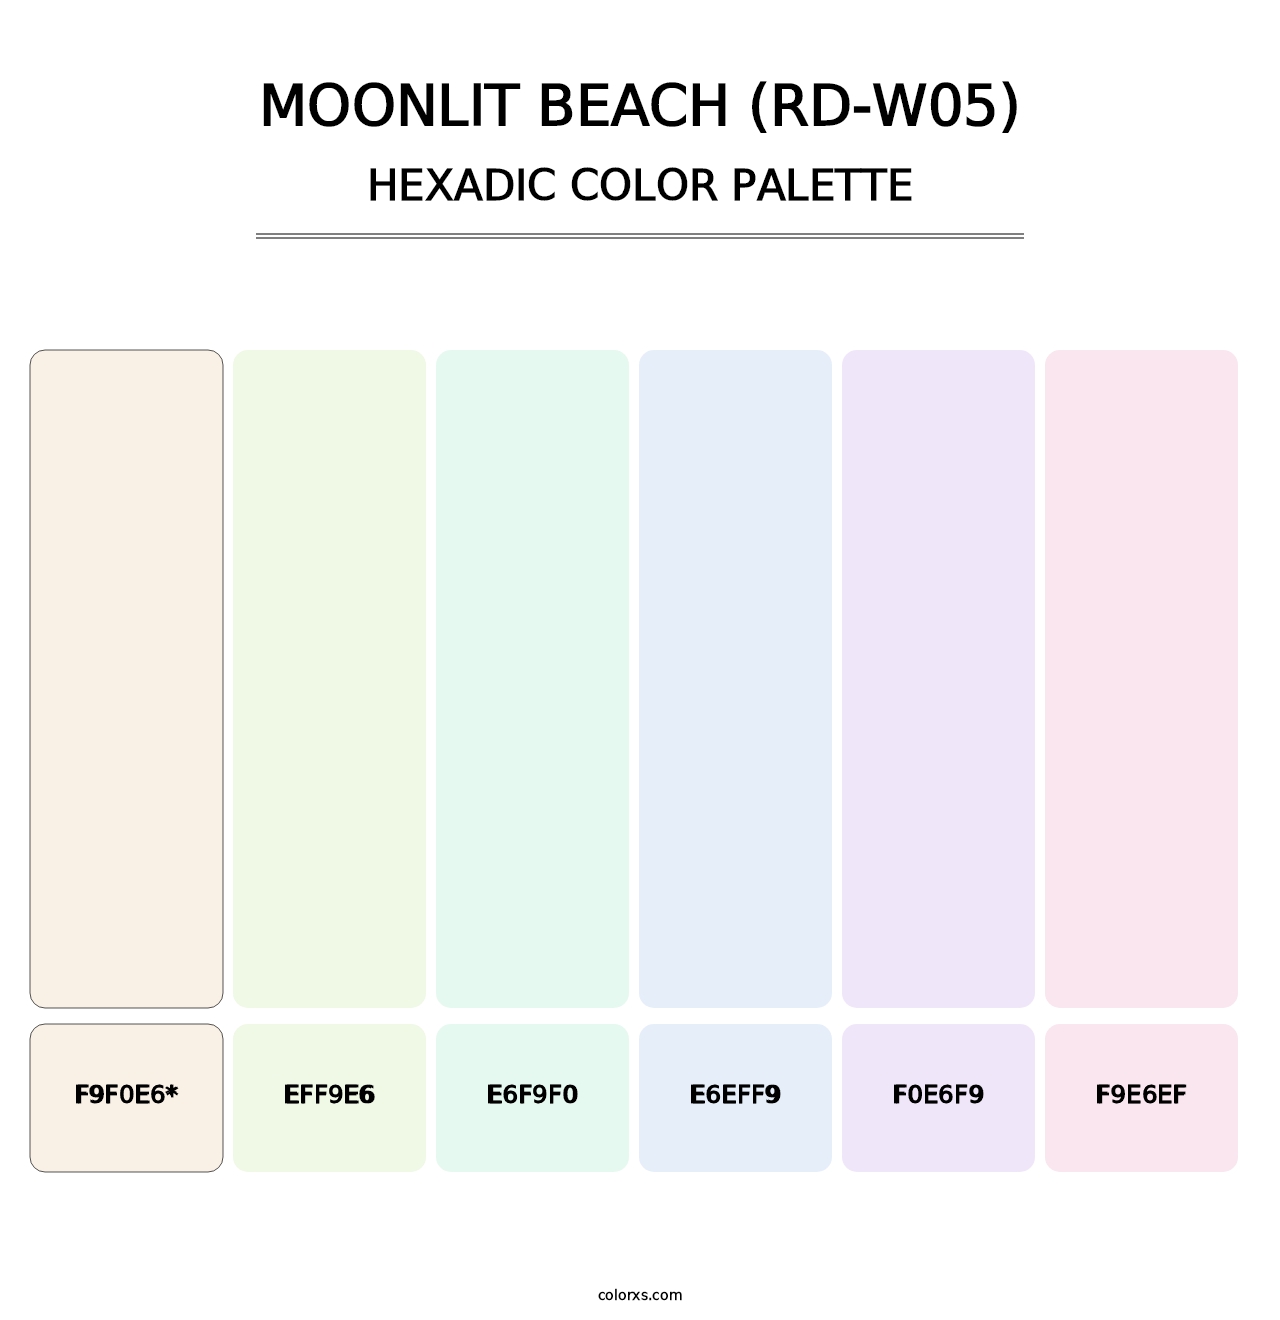 Moonlit Beach (RD-W05) - Hexadic Color Palette